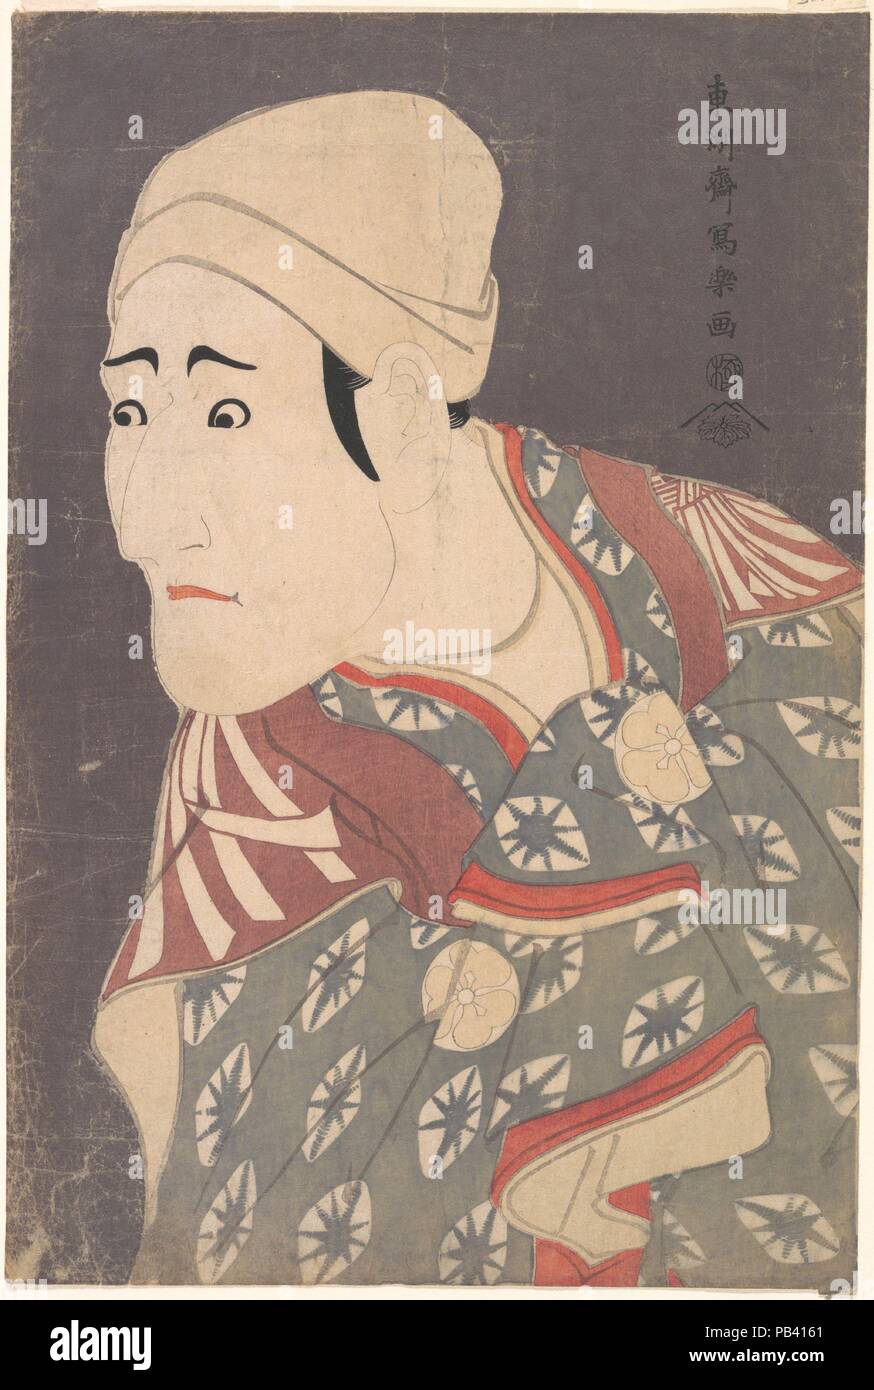 Kabuki Schauspieler Morita Kan'ya VIII als Palanquin-Bearer in den Spielen ein Medley aus Erzählungen von Rache (Katakiuchi noriaibanashi). Artist: Toshusai Sharaku (Japanisch, aktive 1794-95). Kultur: Japan. Abmessungen: 15 x 10 in. (38,1 x 25,4 cm). Datum: 5. Monat 1794. Diese Abbildung, dessen Spitzname "bush Uguisu" bedeutet "WARBLER", ist eine Sänfte Inhaber, ein Beruf, der Edoites mit kleinlichen Hoodlums verbunden. Sharaku zeigt ihn heimlich rieb seine Hände in seinem Kimono, ein konventioneller Geste zeigt seinen schuldigen Bewusstsein der bösen Tat er zu begehen. Sharaku war ein Meister in der Gestaltung für Stockfoto